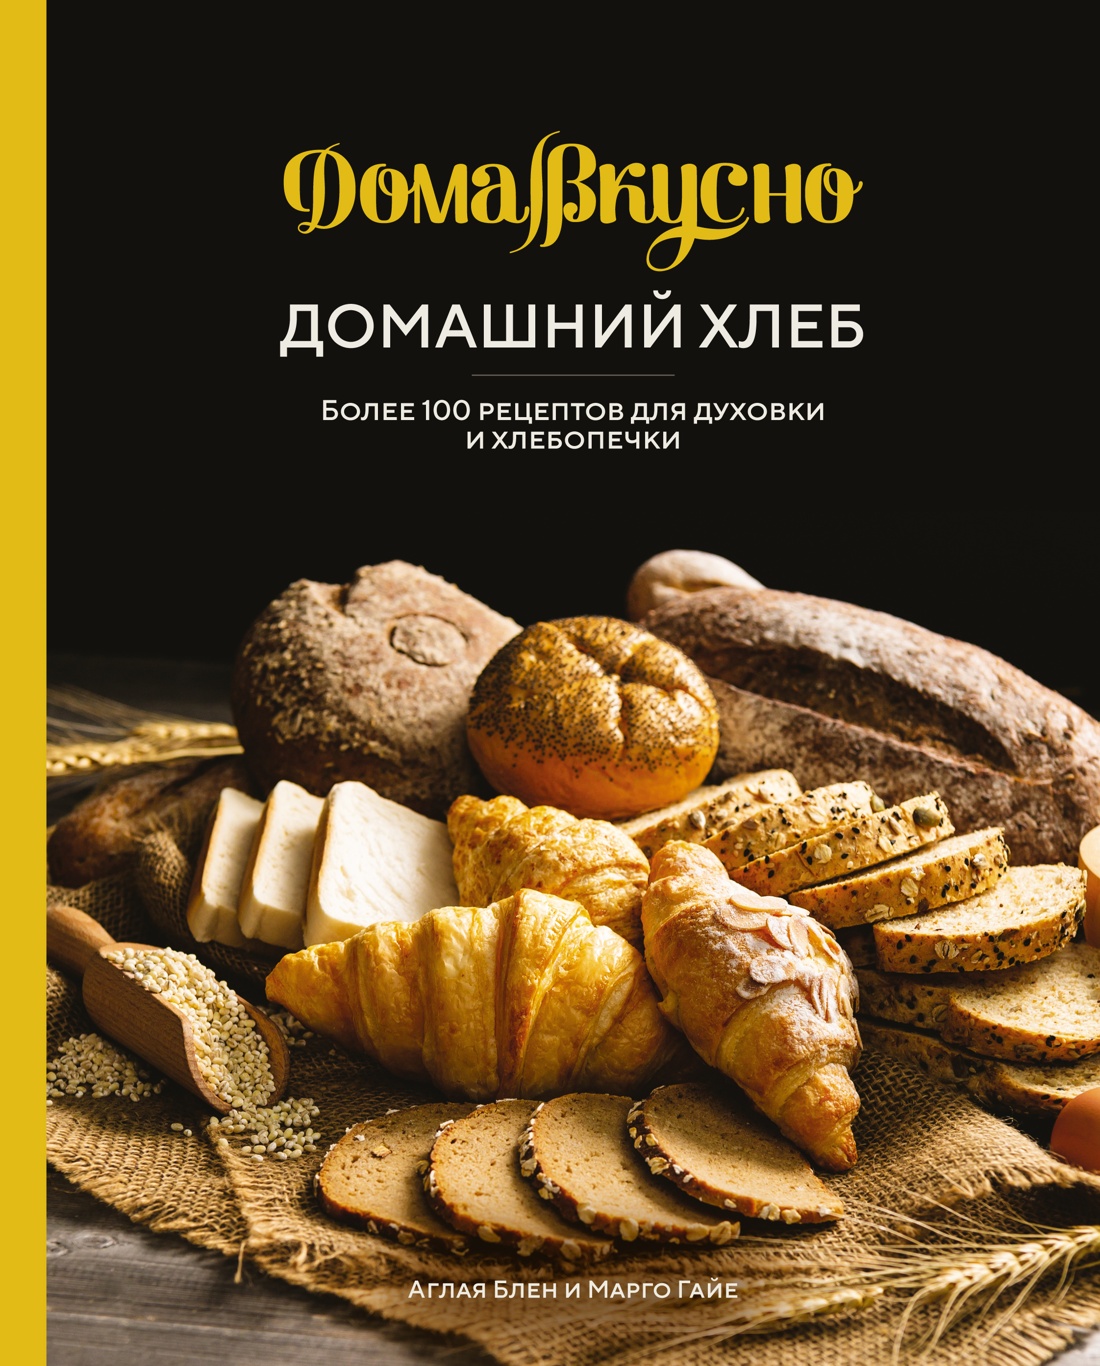 Домашний хлеб: Более 100 рецептов для духовки и хлебопечки